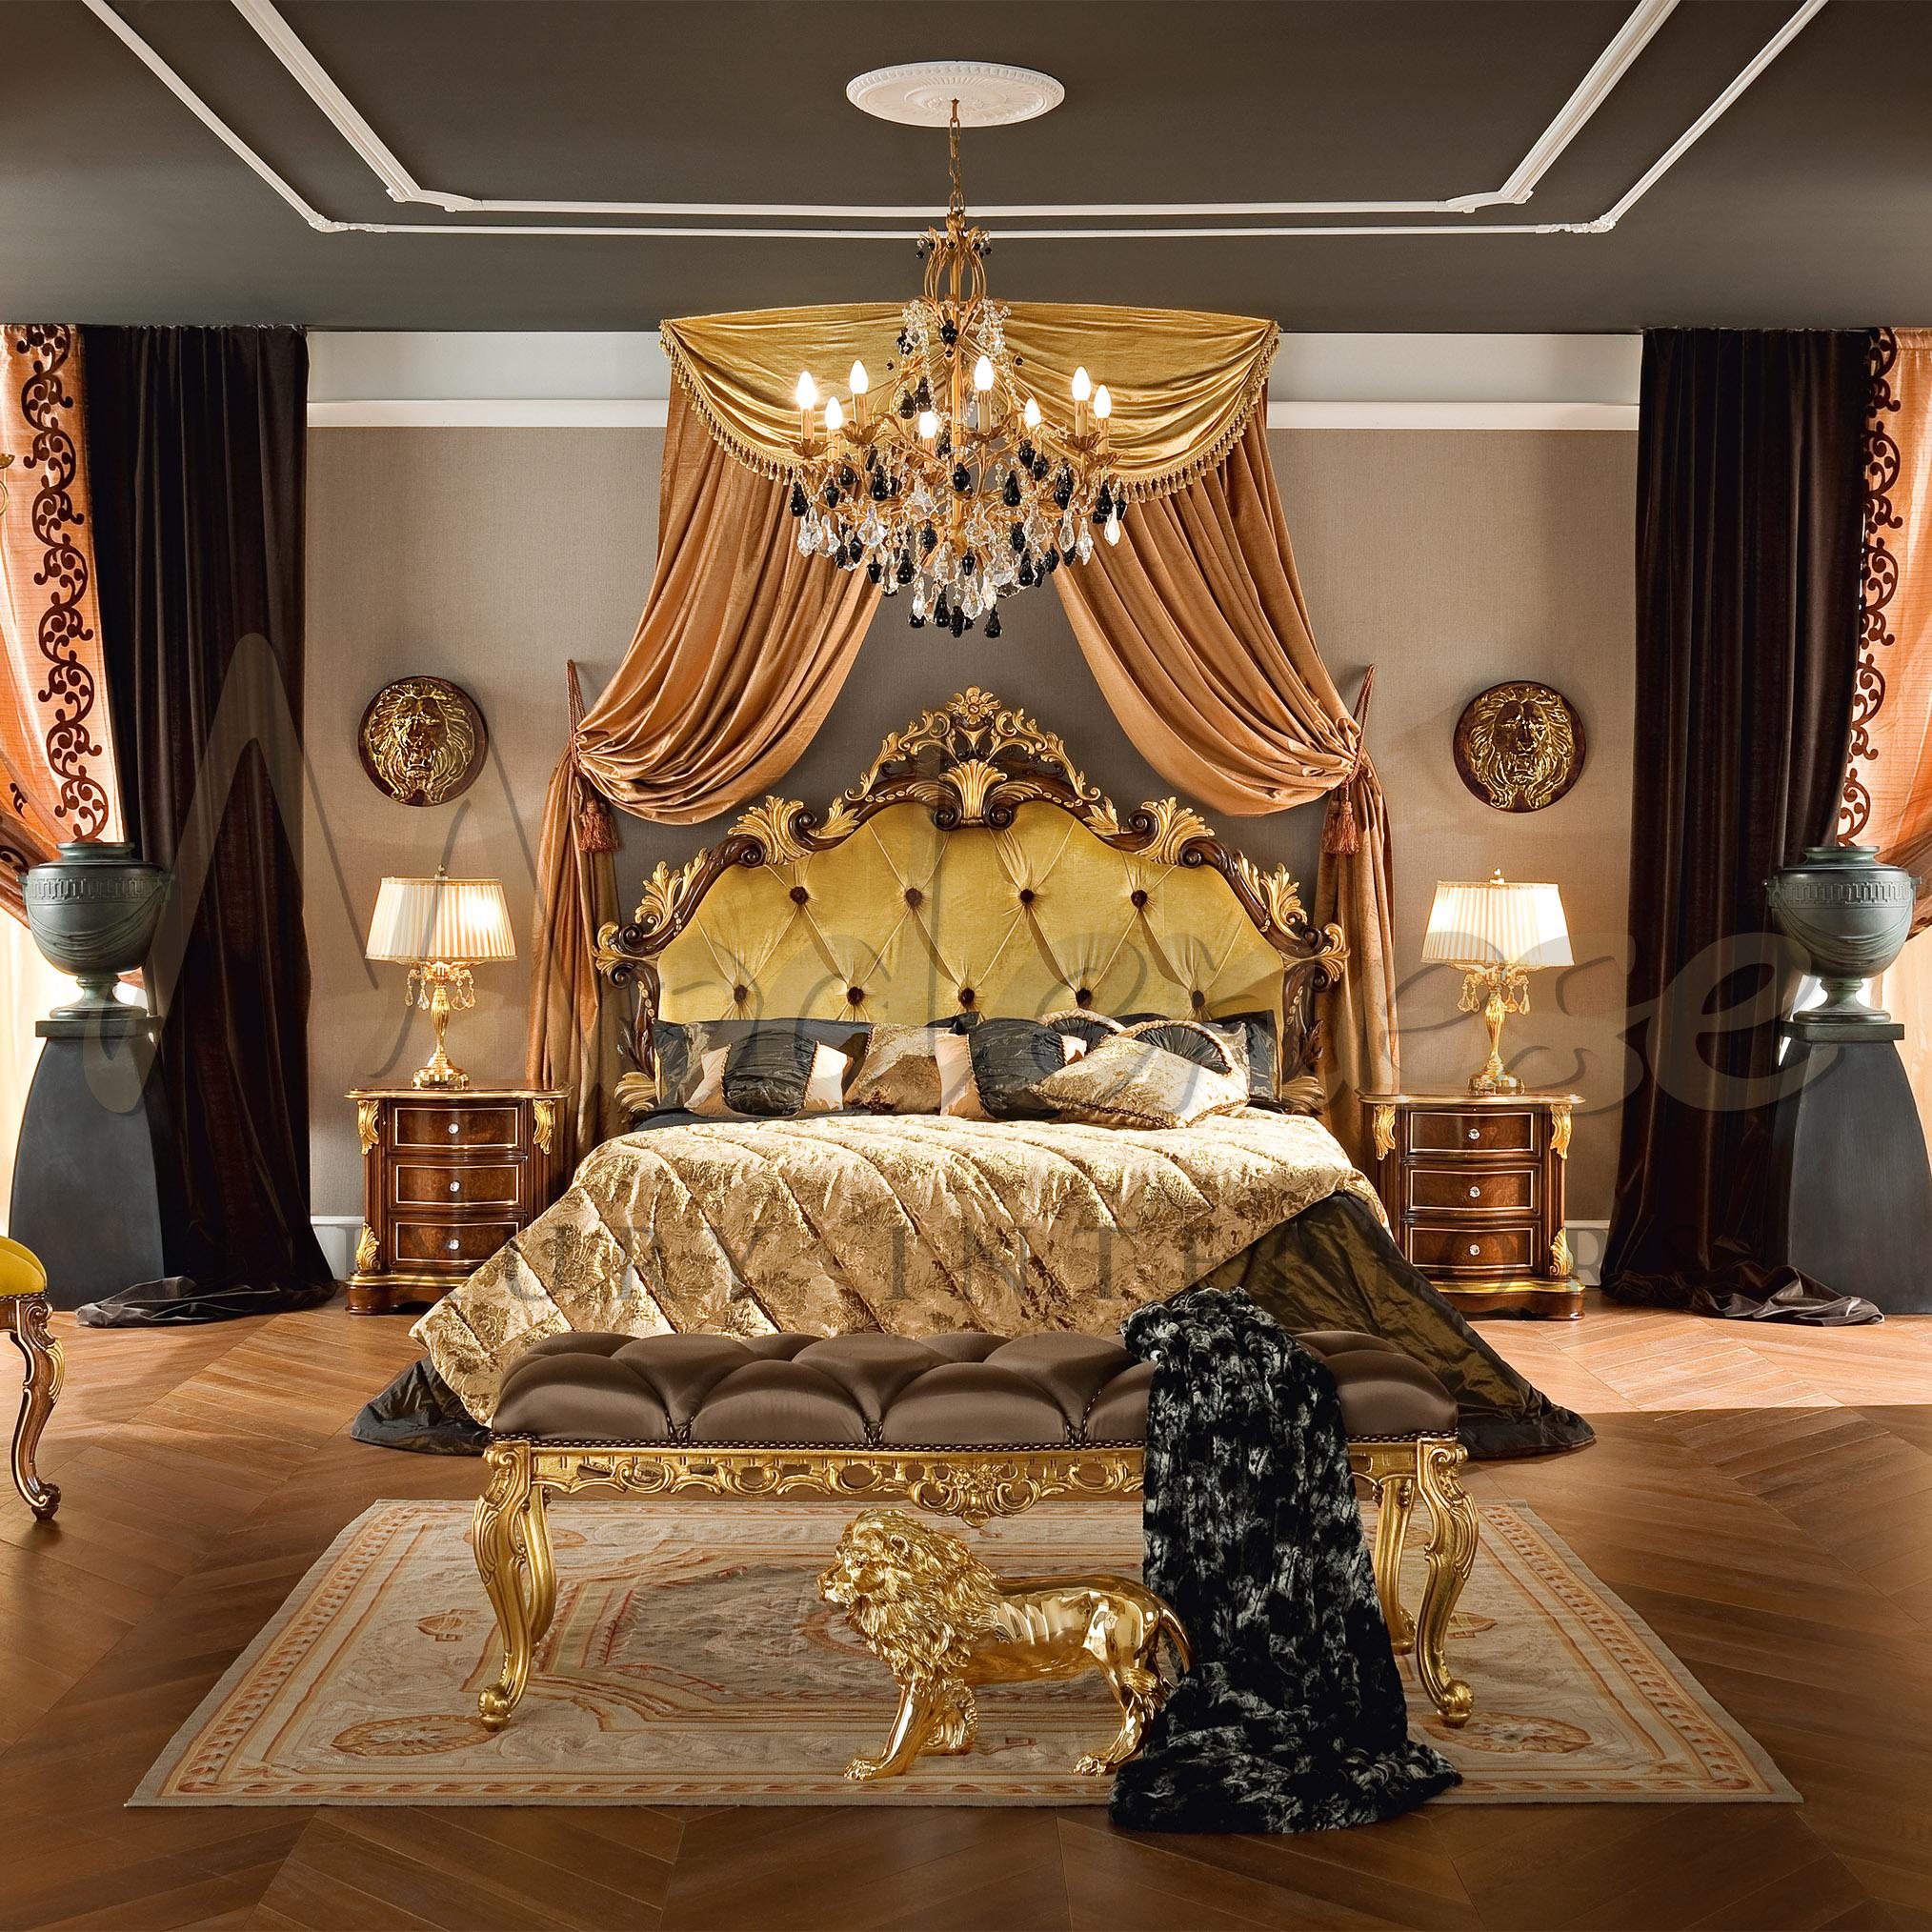 Découvrez les traditions baroques italiennes sous un nouveau jour avec Modenese Luxury Interiors, et admirez cette longue banquette de lit Bella Vita au revêtement touffeté en satin marron avec boutons assortis, également disponible en version